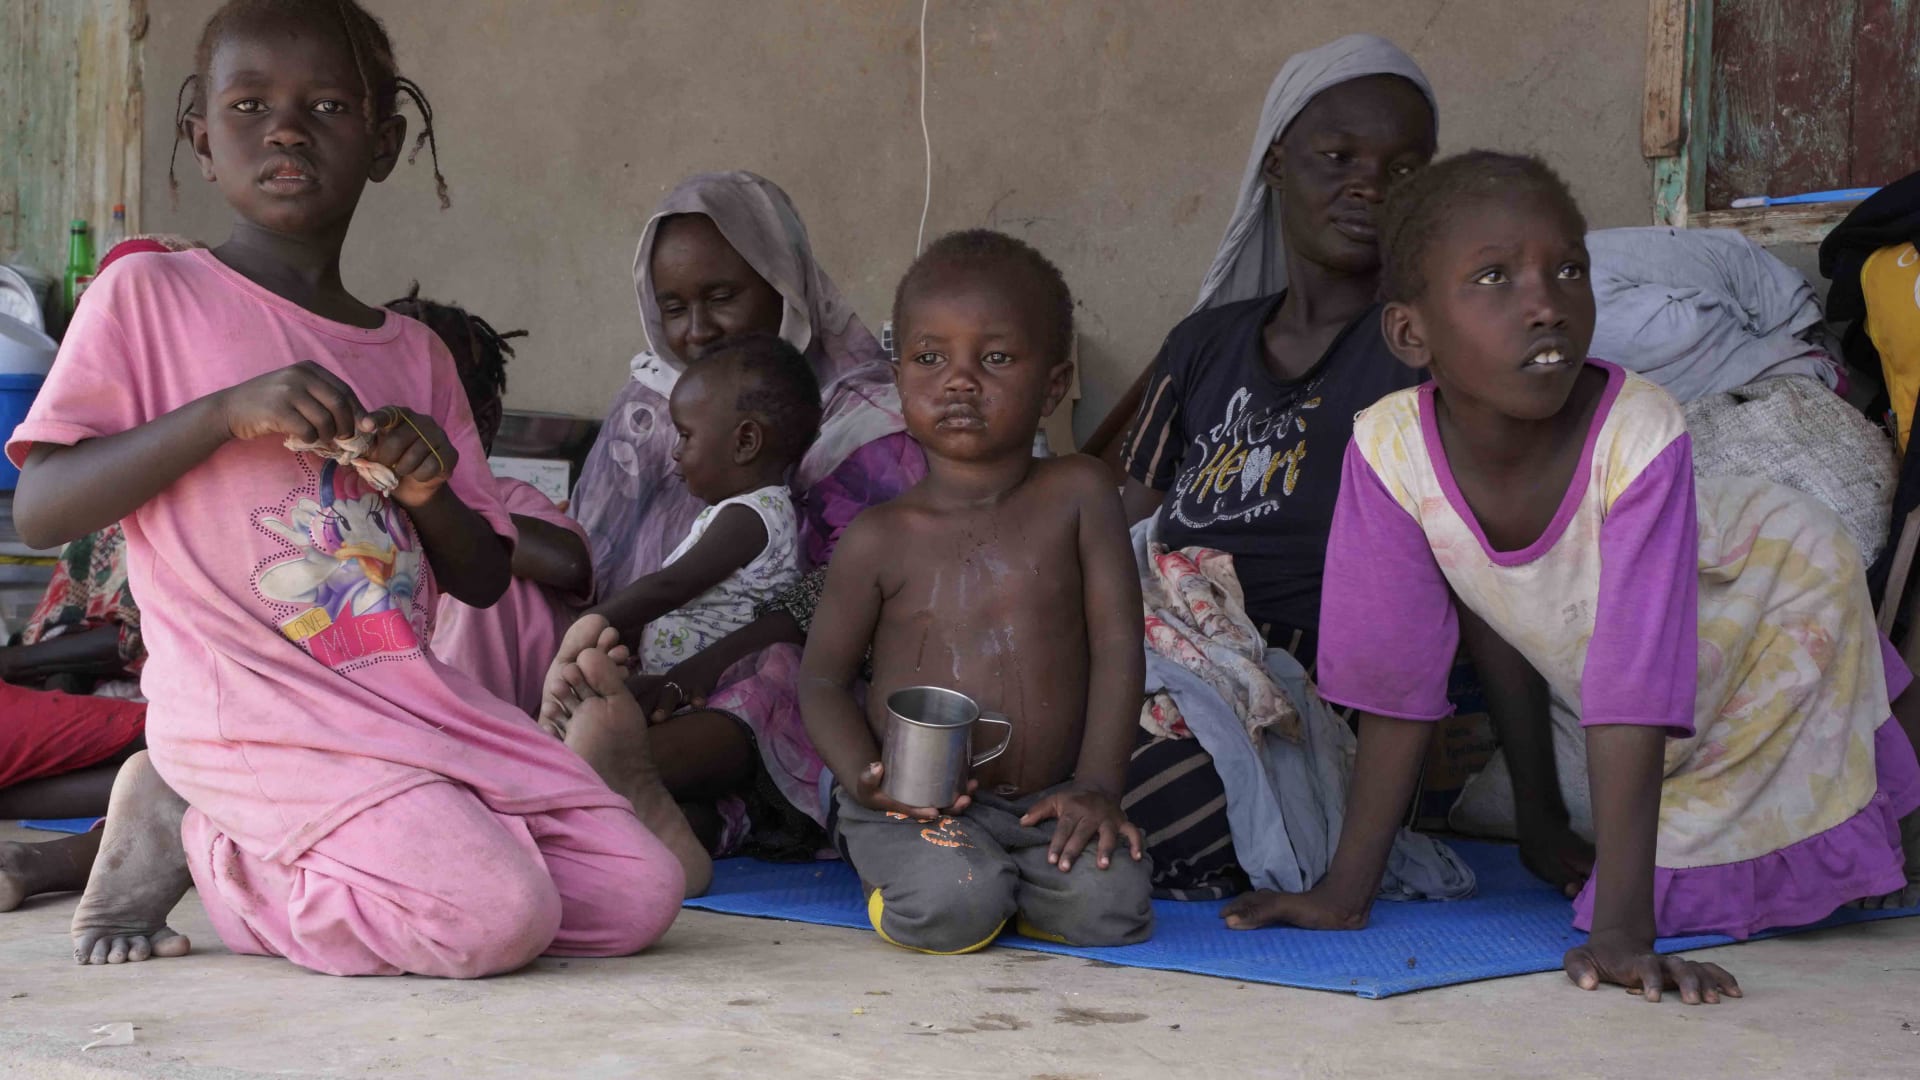 "الوضع يتدهور بشكل كبير".. الصليب الأحمر تدعو إلى استجابة إنسانية عاجلة في السودان